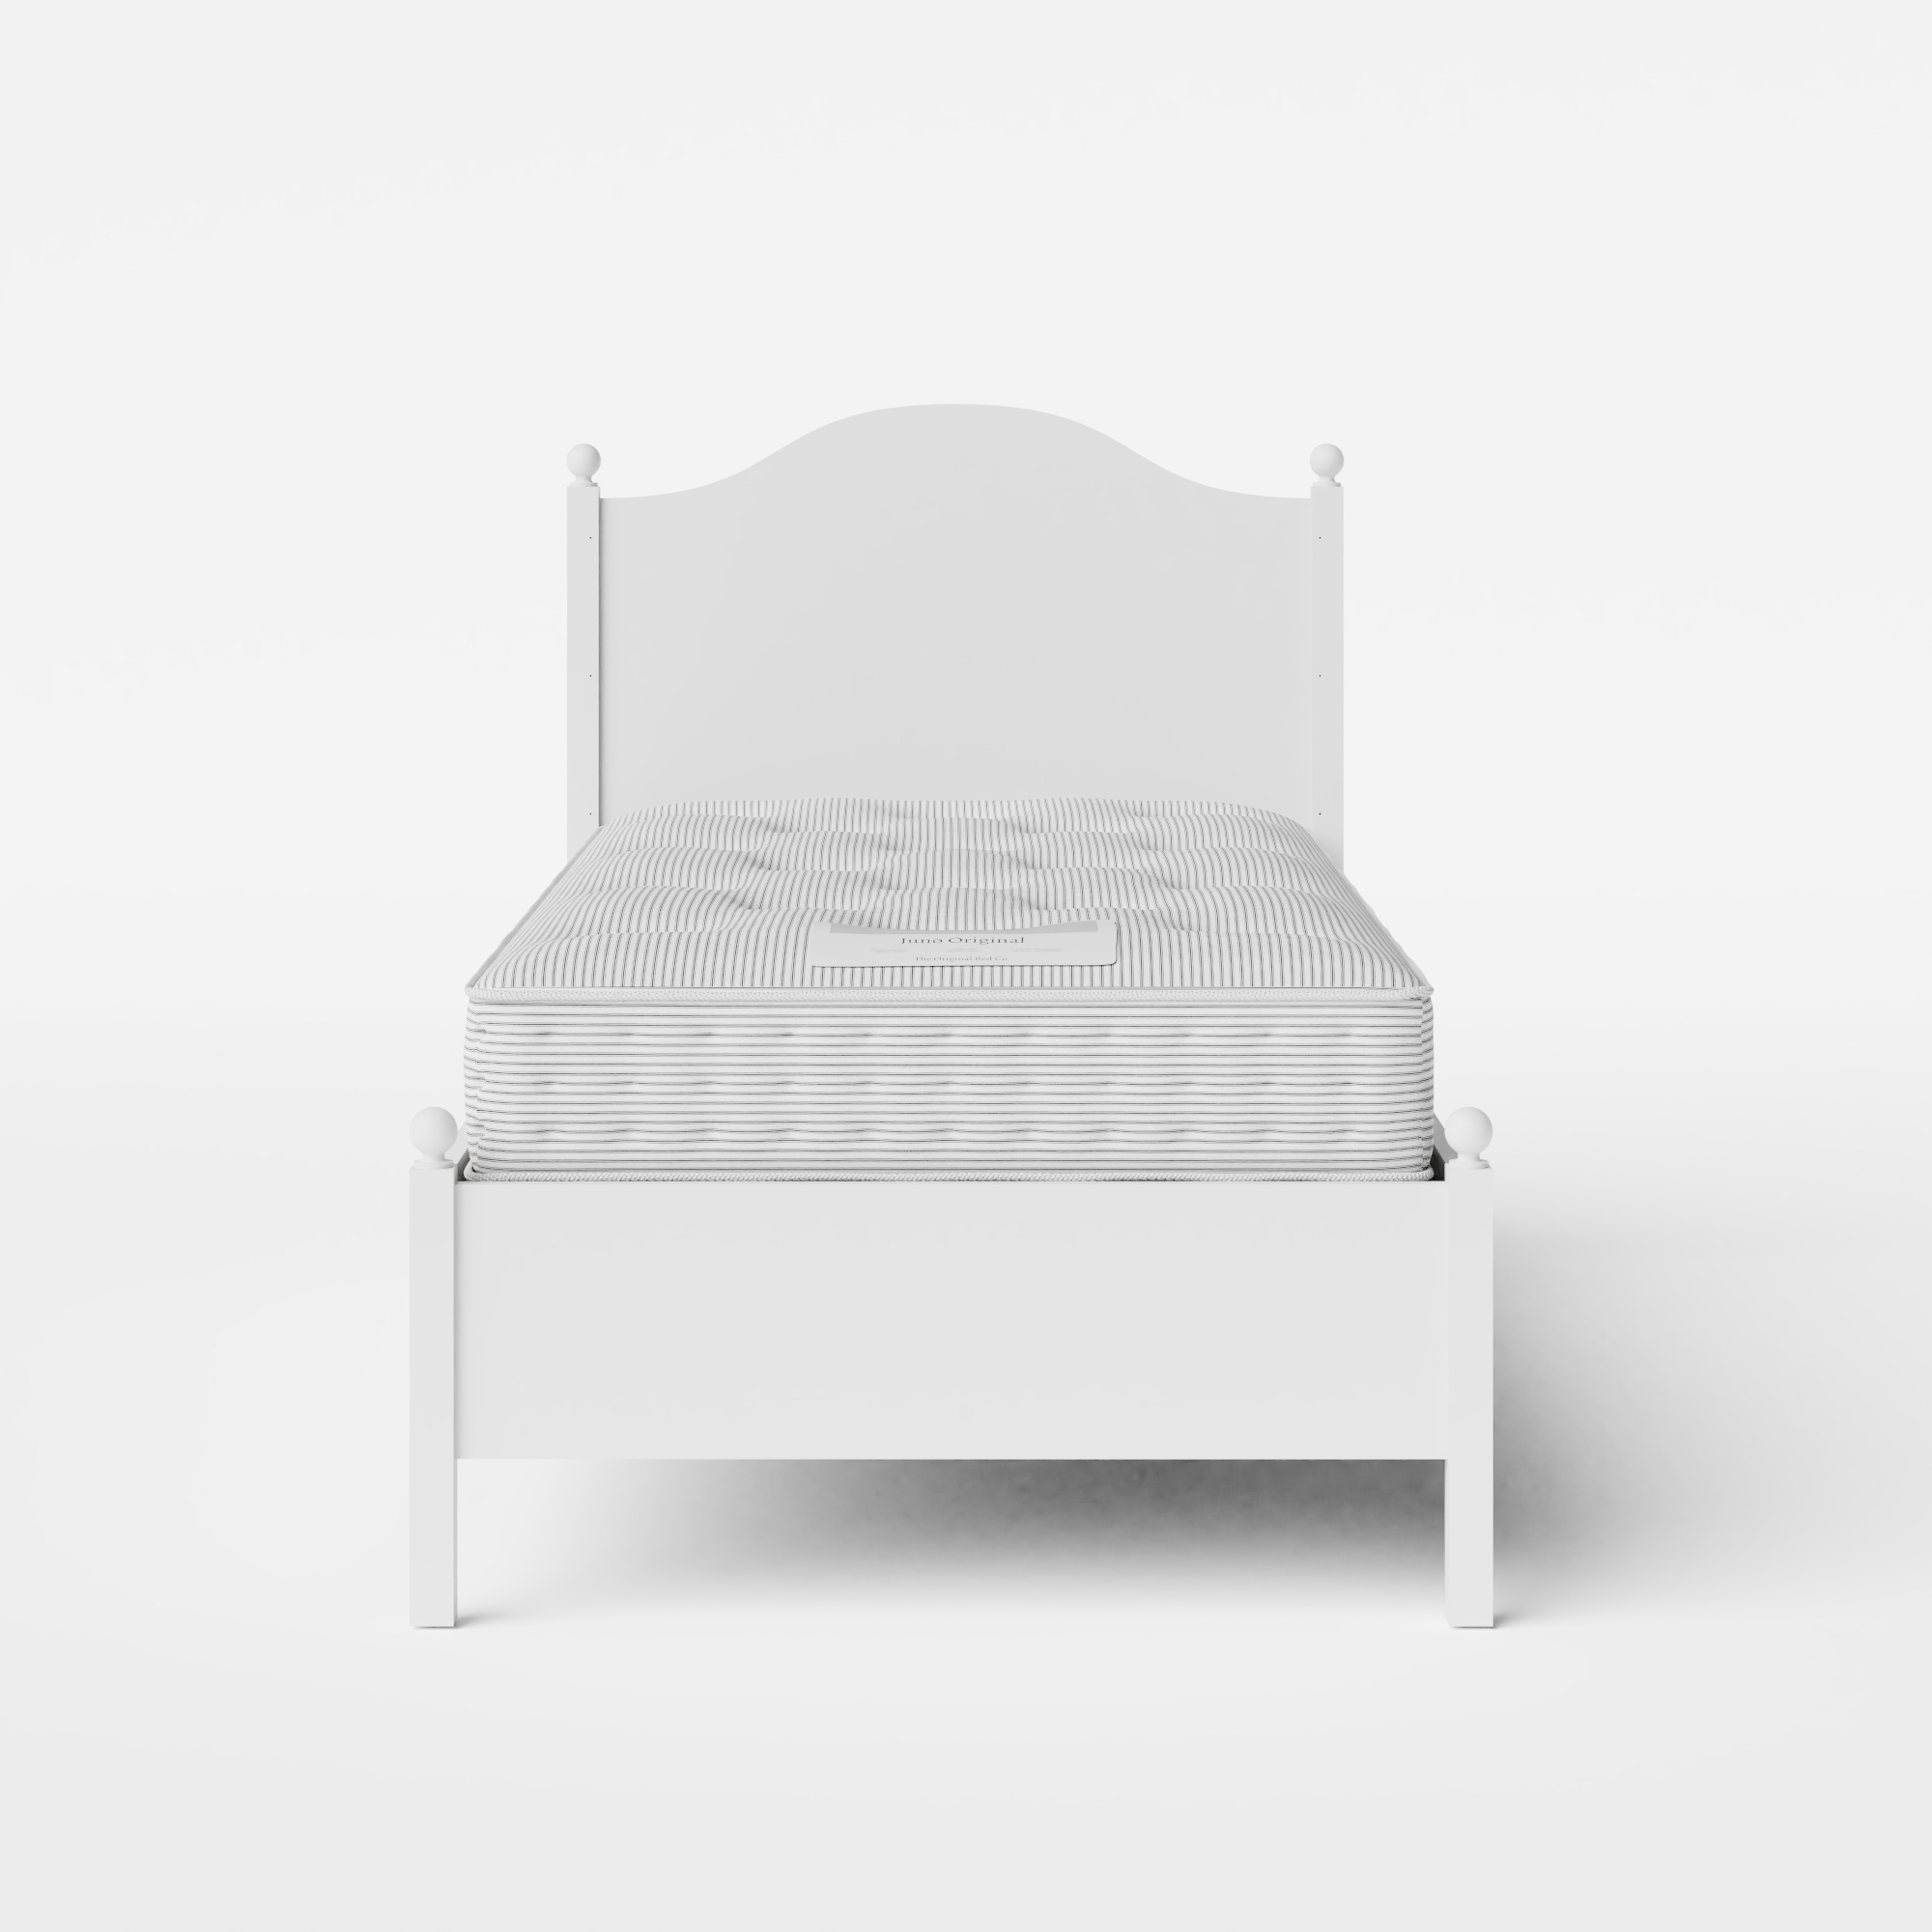 Brady Painted cama individual de madera pintada en blanco con colchón